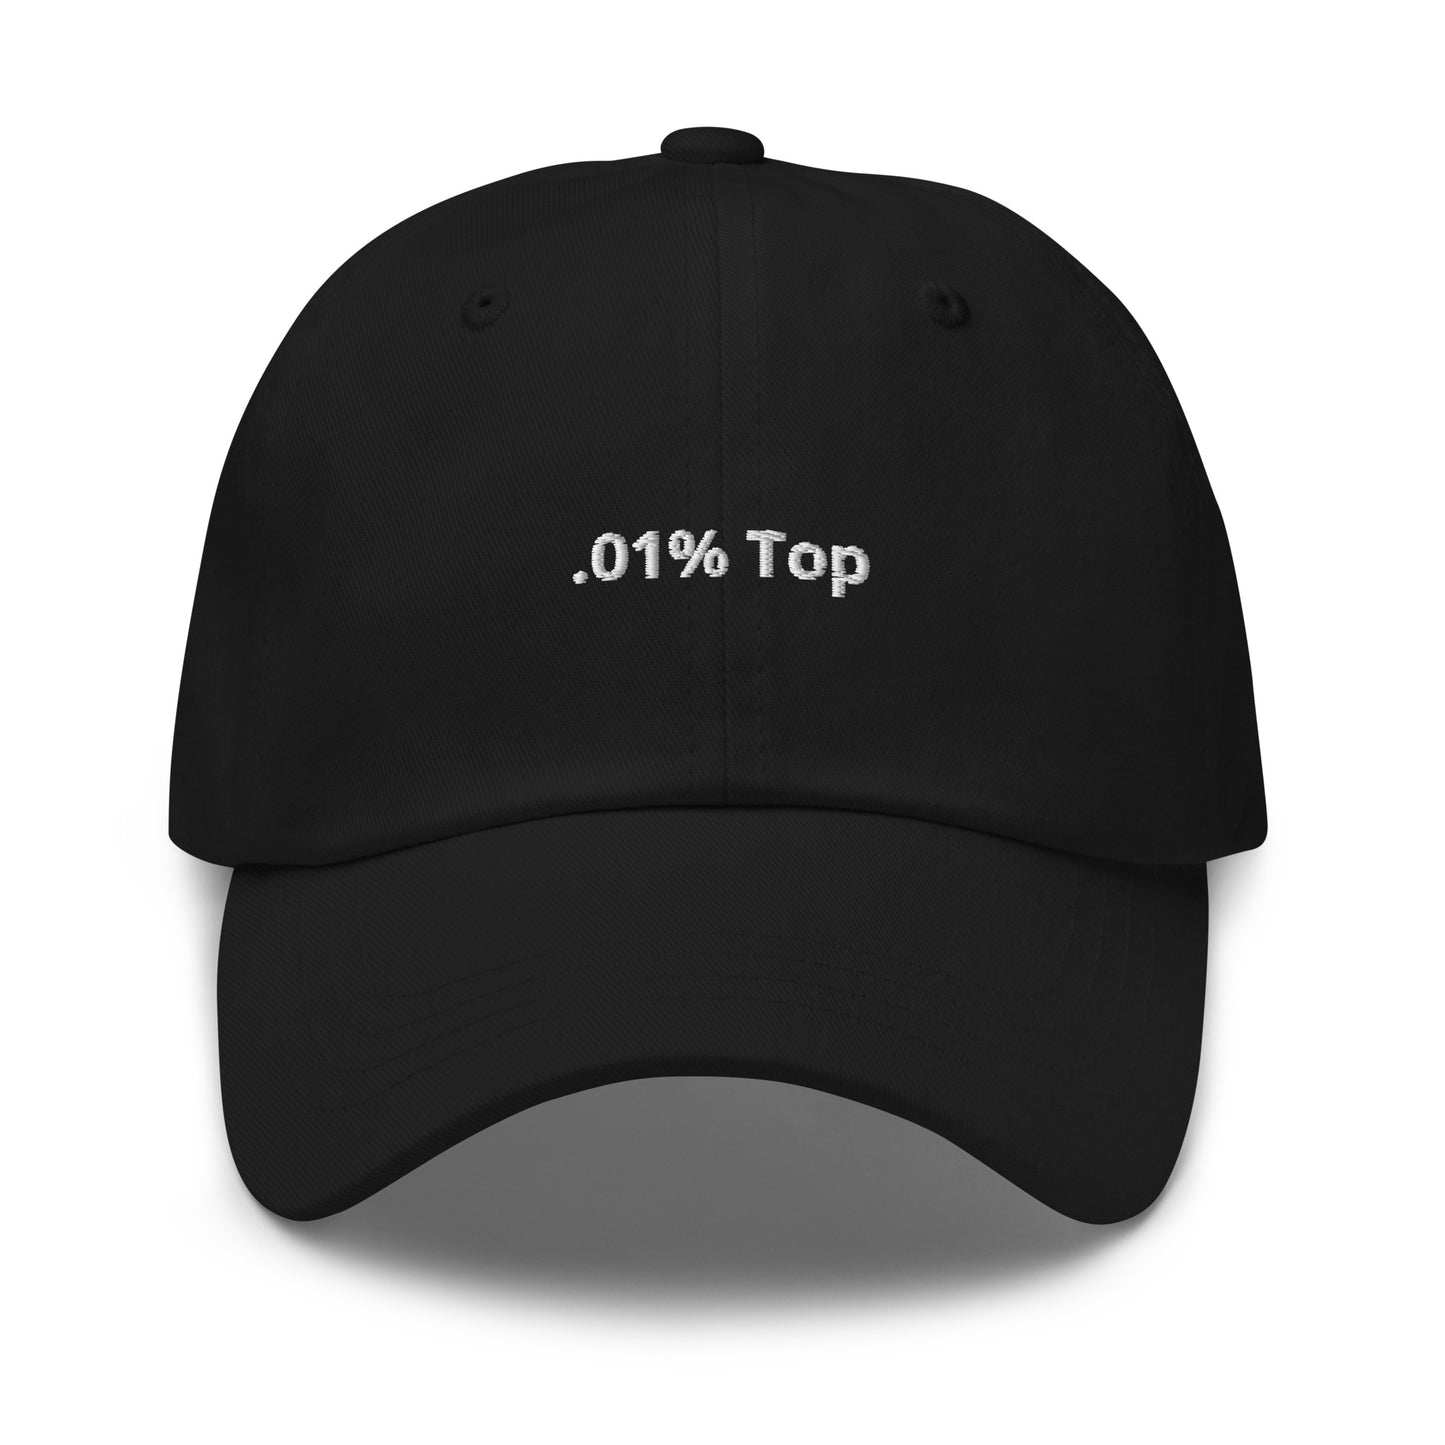 .01% Top Hat